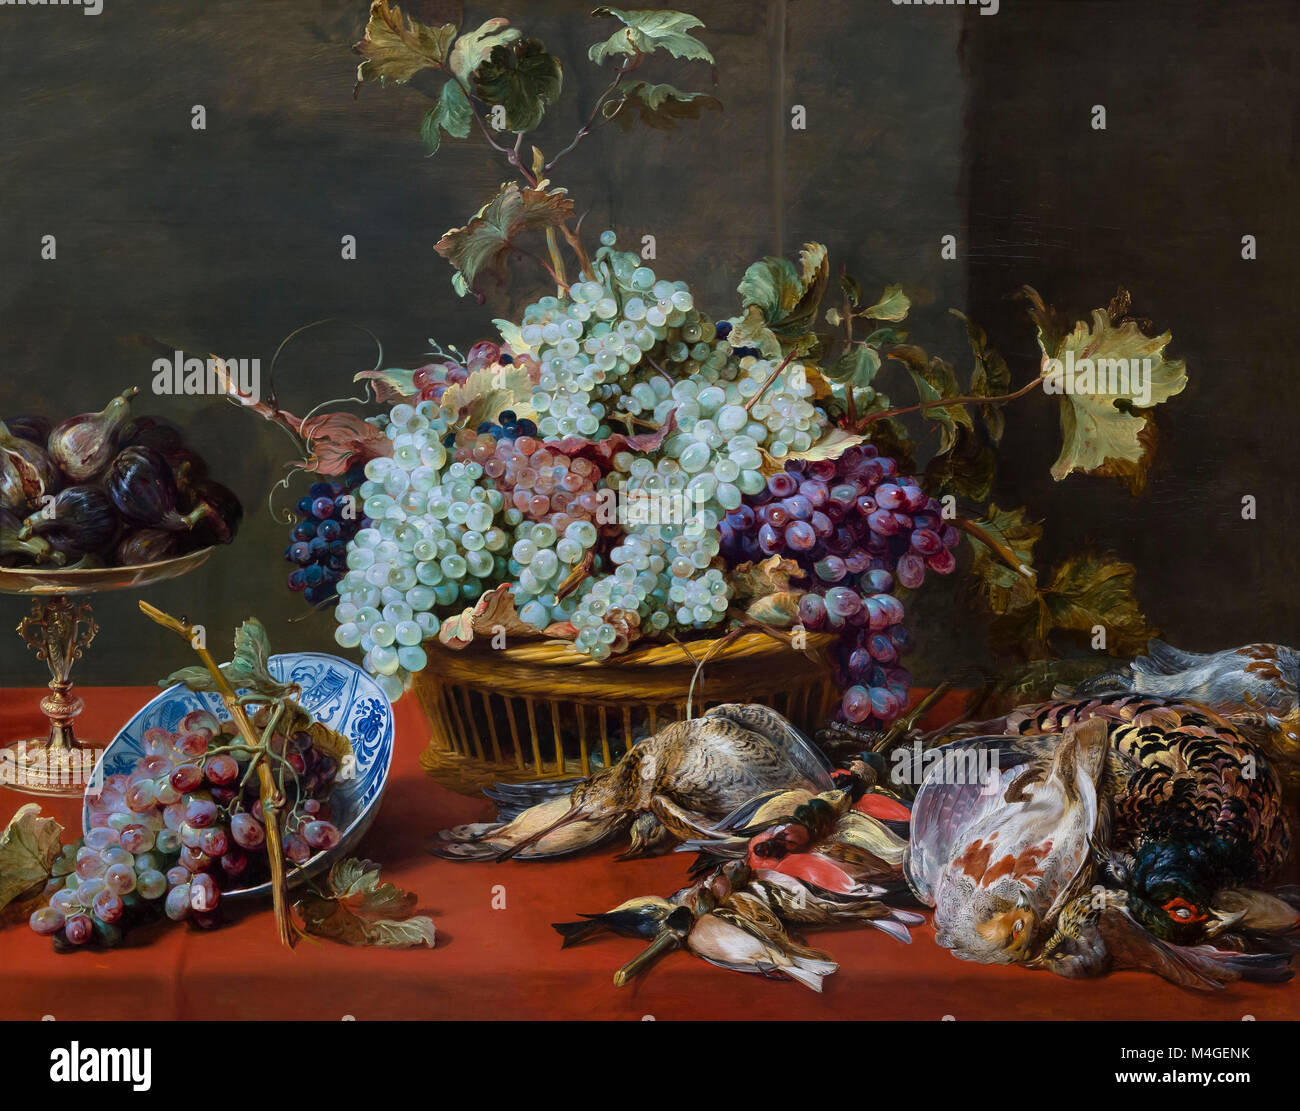 Nature morte avec raisins et jeu, Frans Snyders, vers 1630, National Gallery of Art, Washington DC, USA, Amérique du Nord Banque D'Images